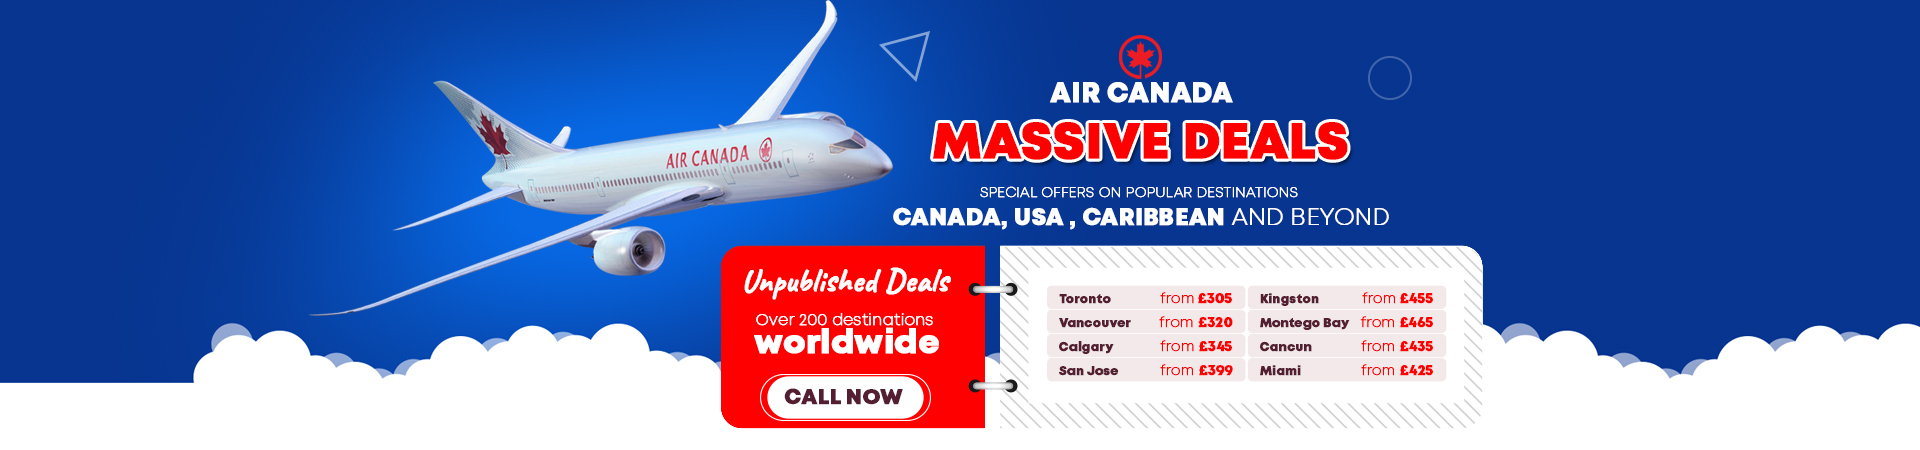 Air Canada Massive Deals